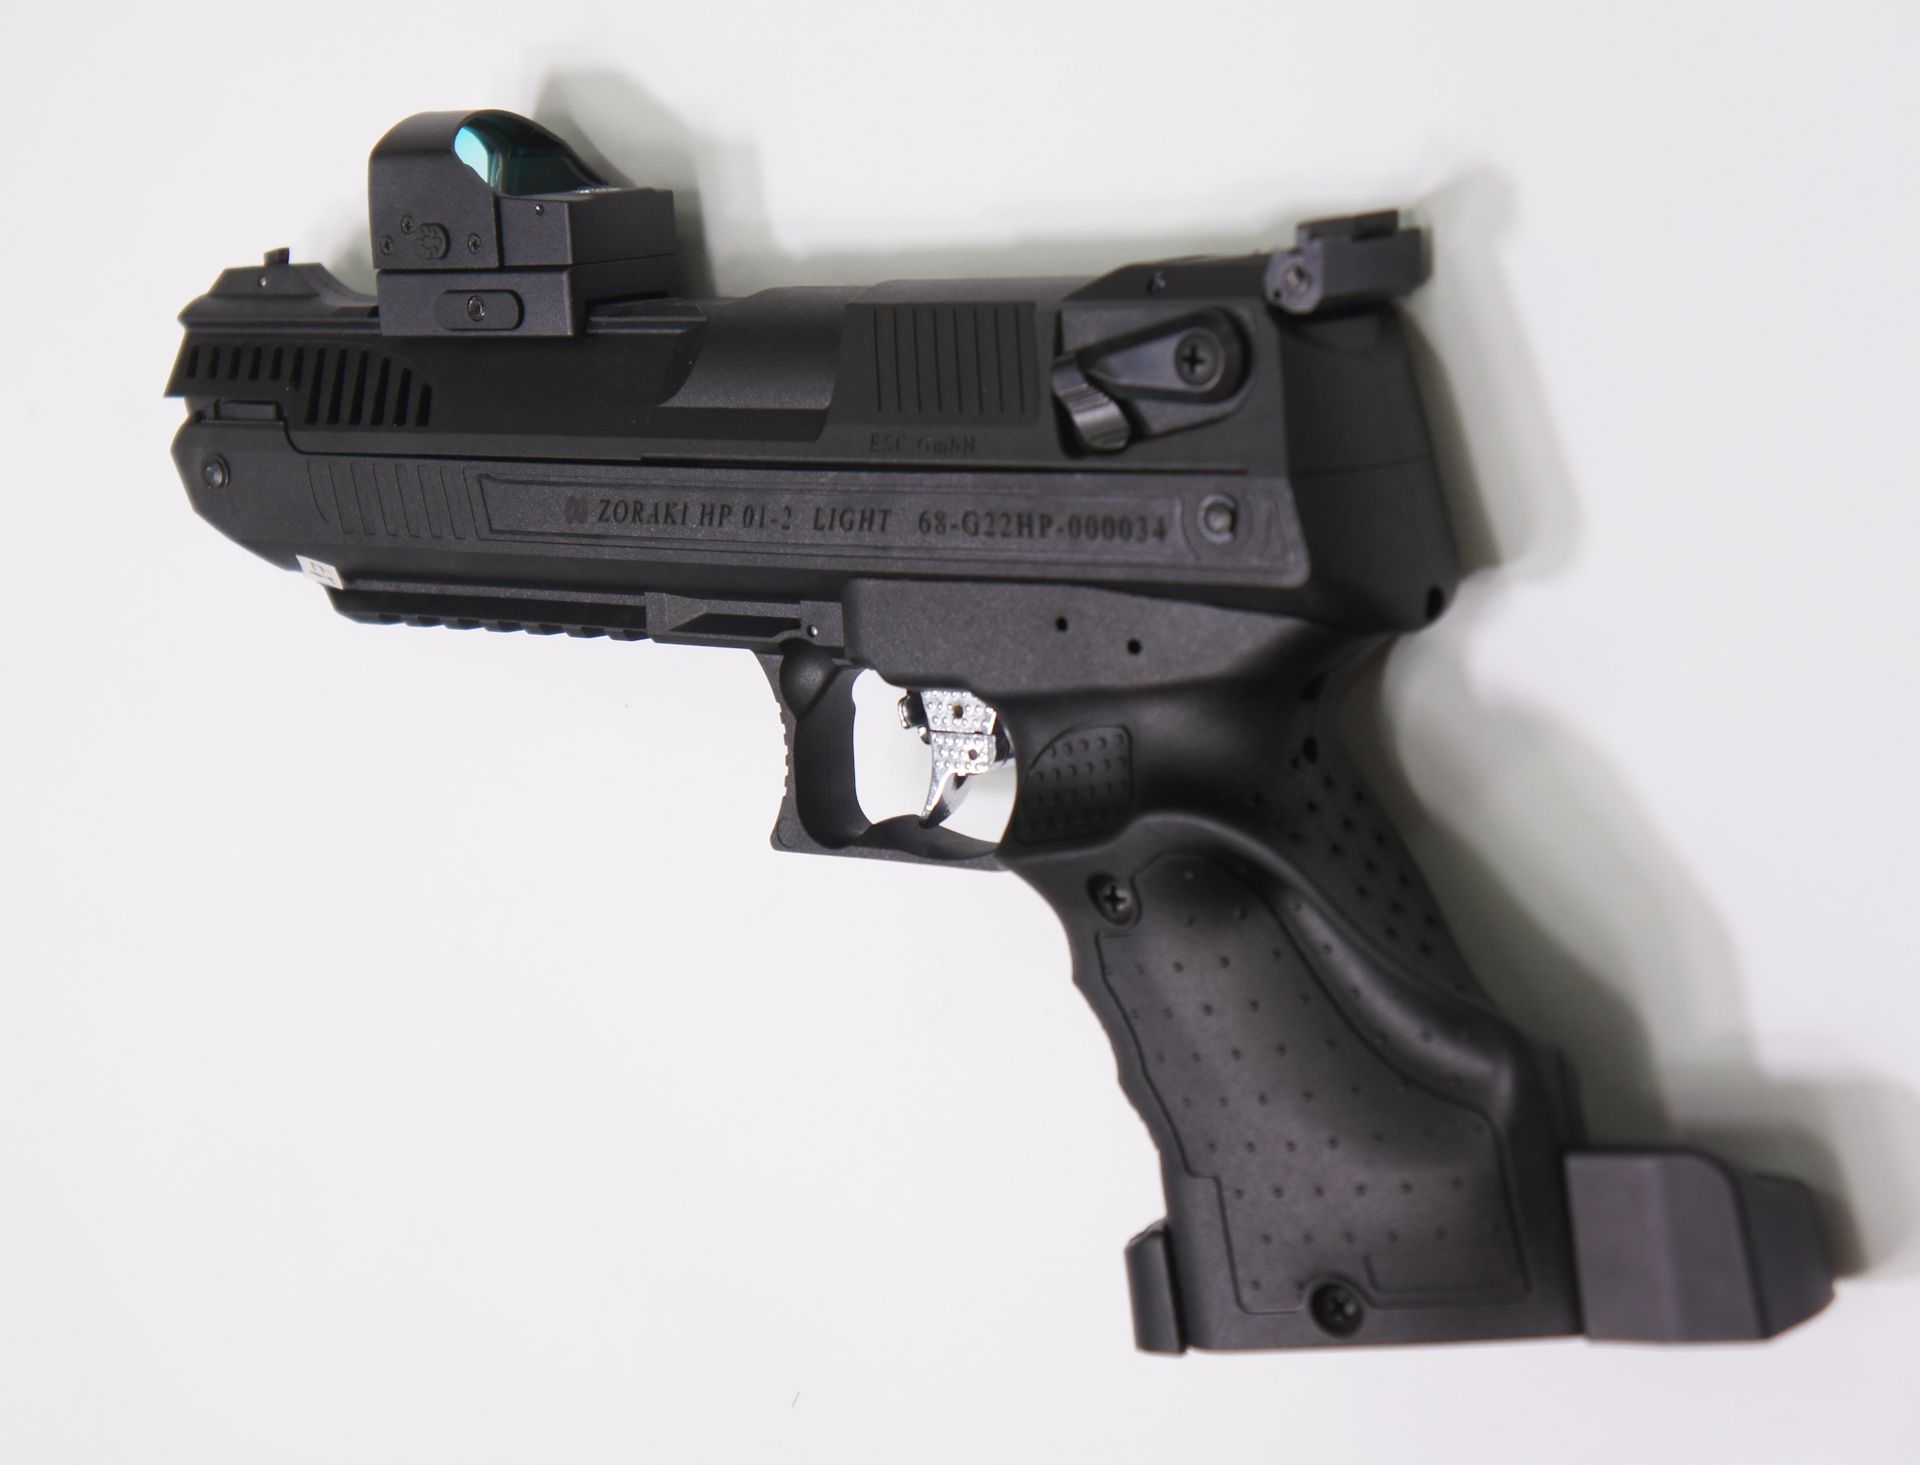 Montagebeispiel vom Reflexvisier Konus Sight Pro Fission mit Luftpistole Zoraki H01. An der Pistole habe ich Anpassungen gemacht und die wird bei mir so verkauft.